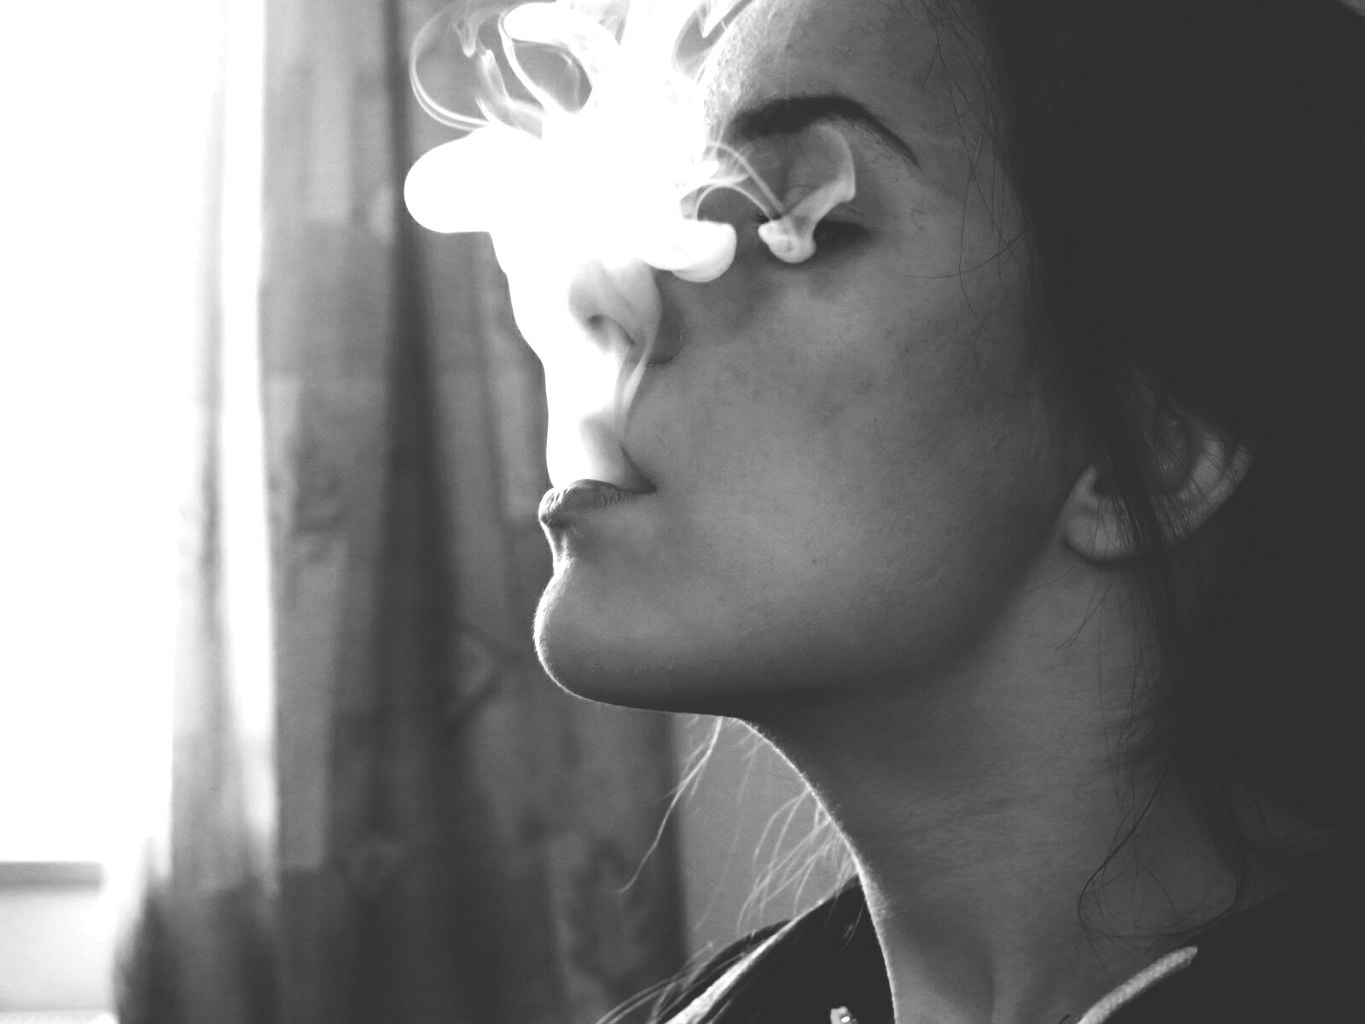 Hình nữ hút thuốc